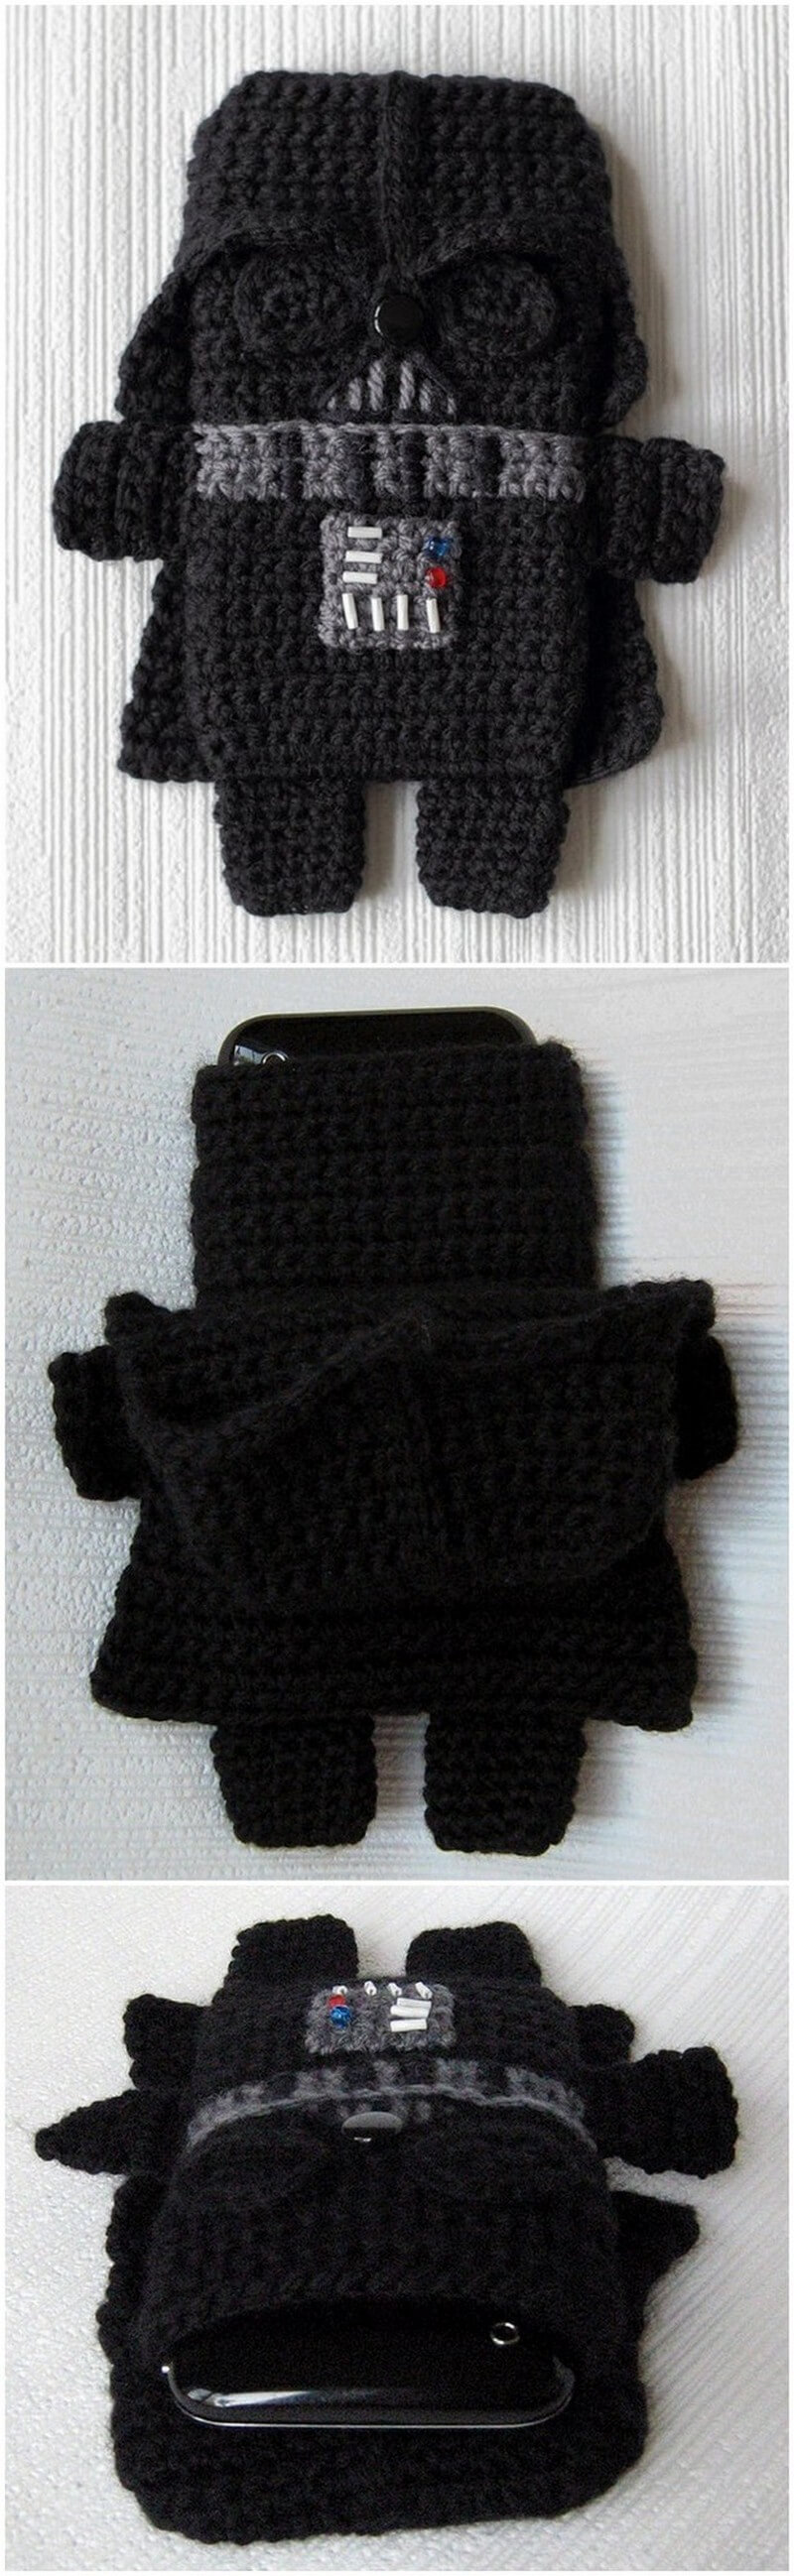 Crochet Mobile Cover Pattern (22)